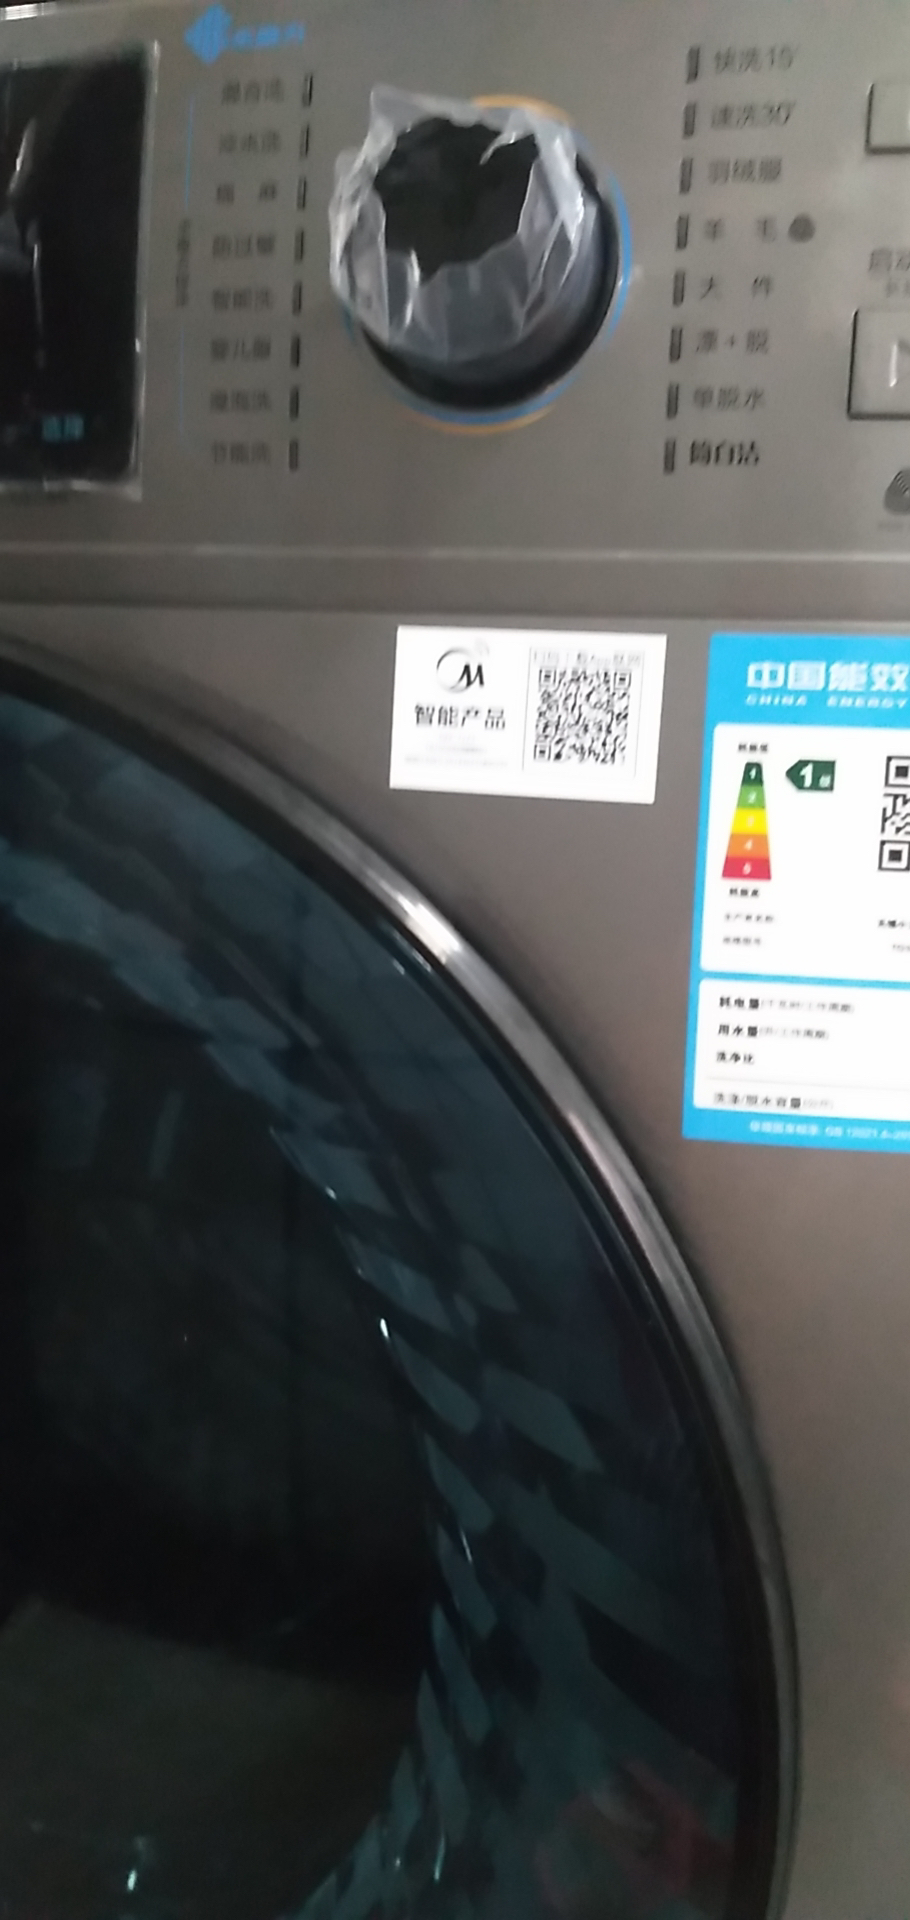 小天鹅滚筒洗衣机全自动10公斤大容量水魔方护形护色智能家电内衣除菌婴儿服洗TG100V868WMADY晒单图